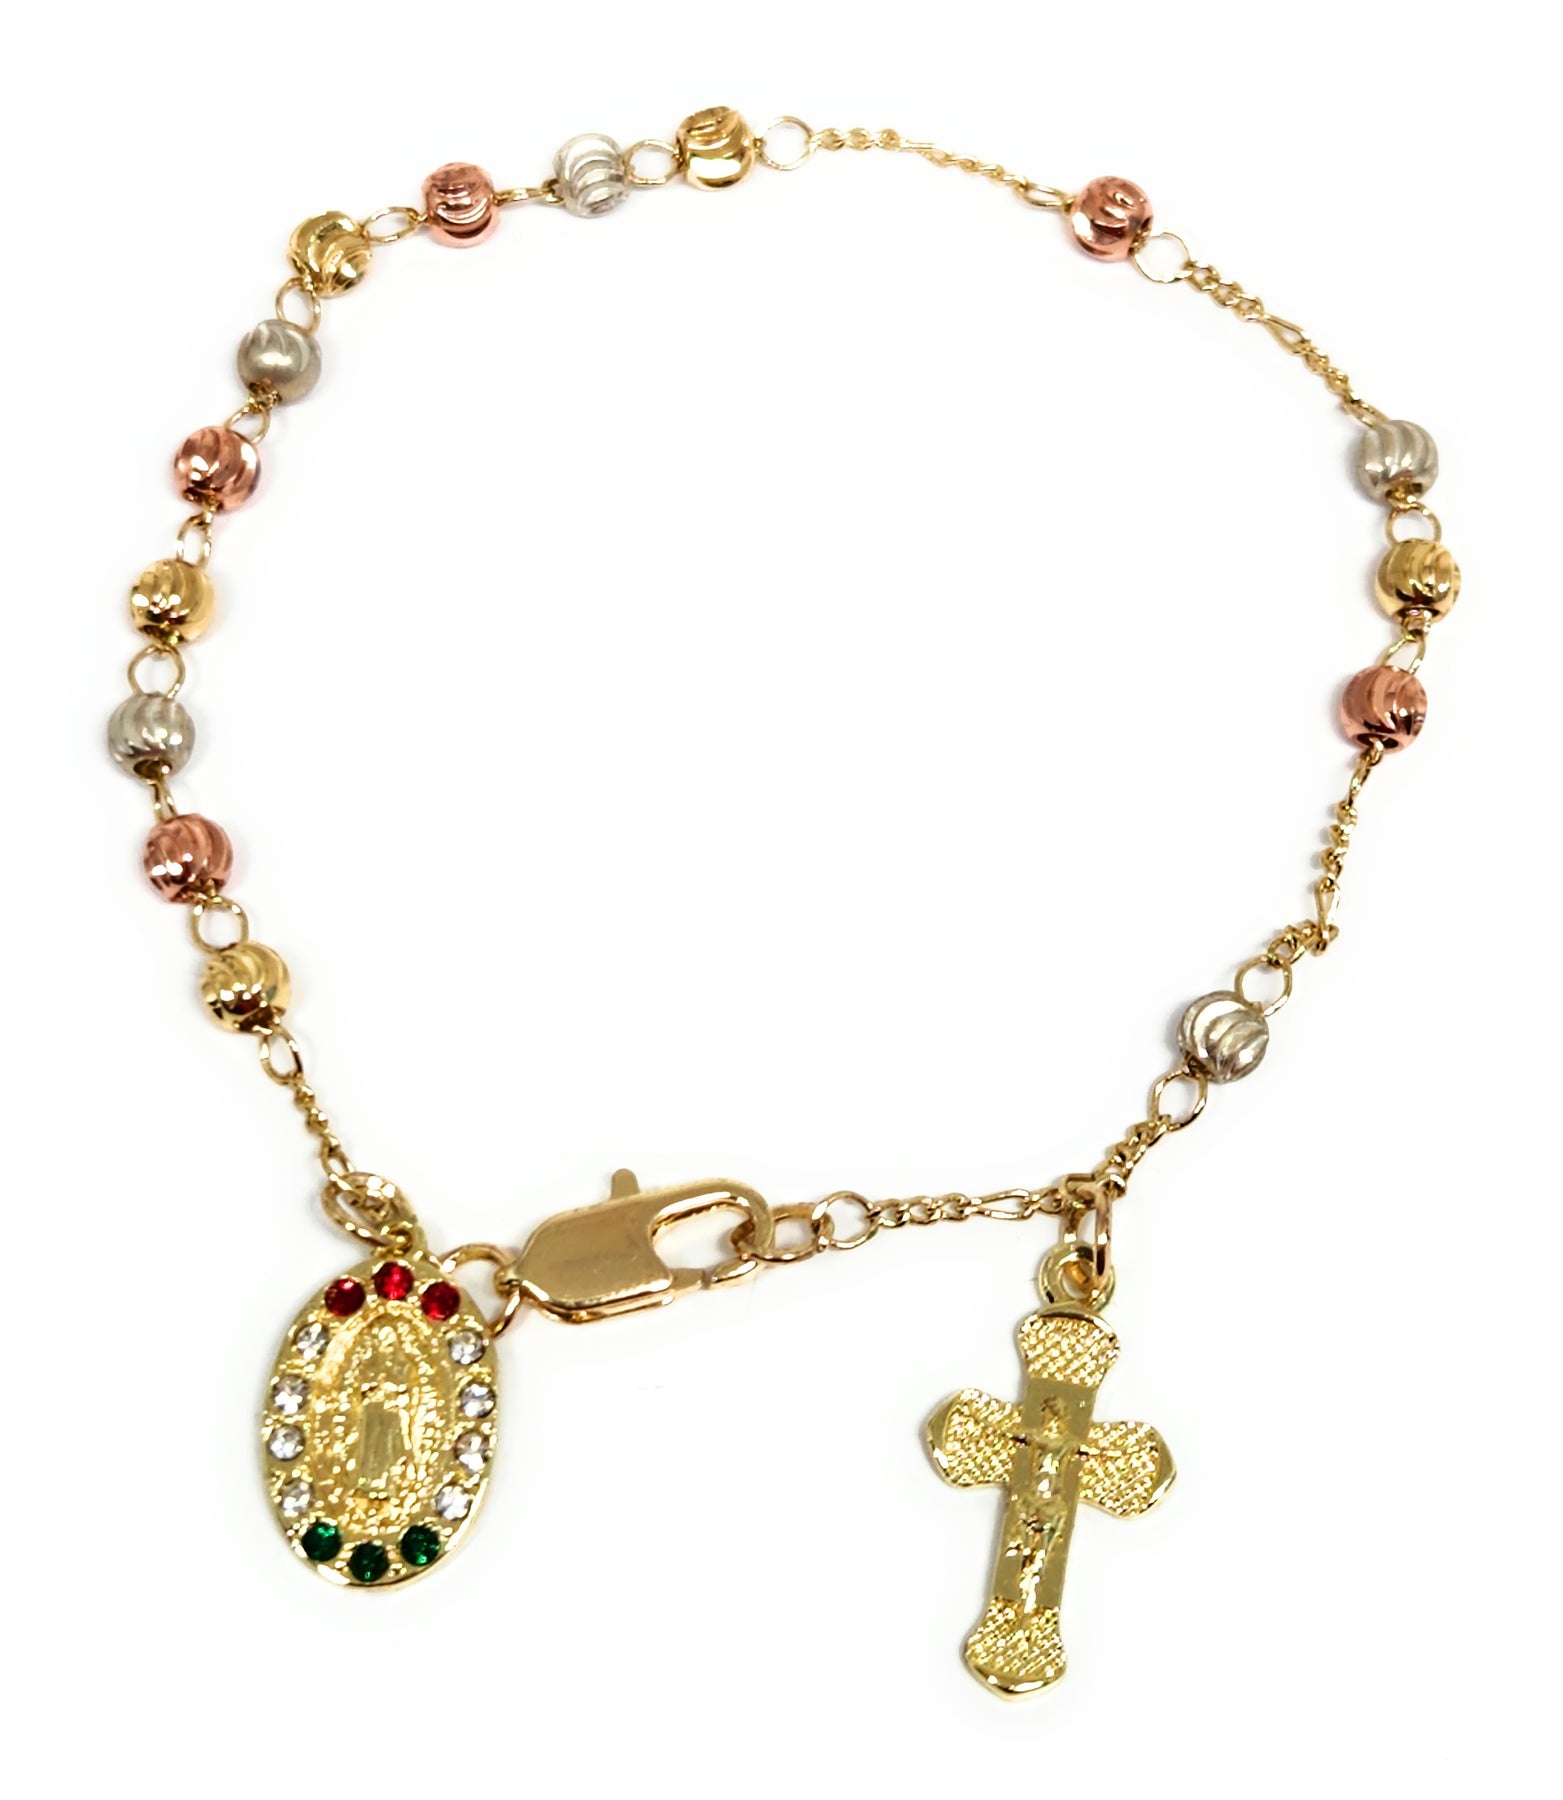 Gold Plated Virgin Mary Bracelet Virgen de Guadalupe Brazalete